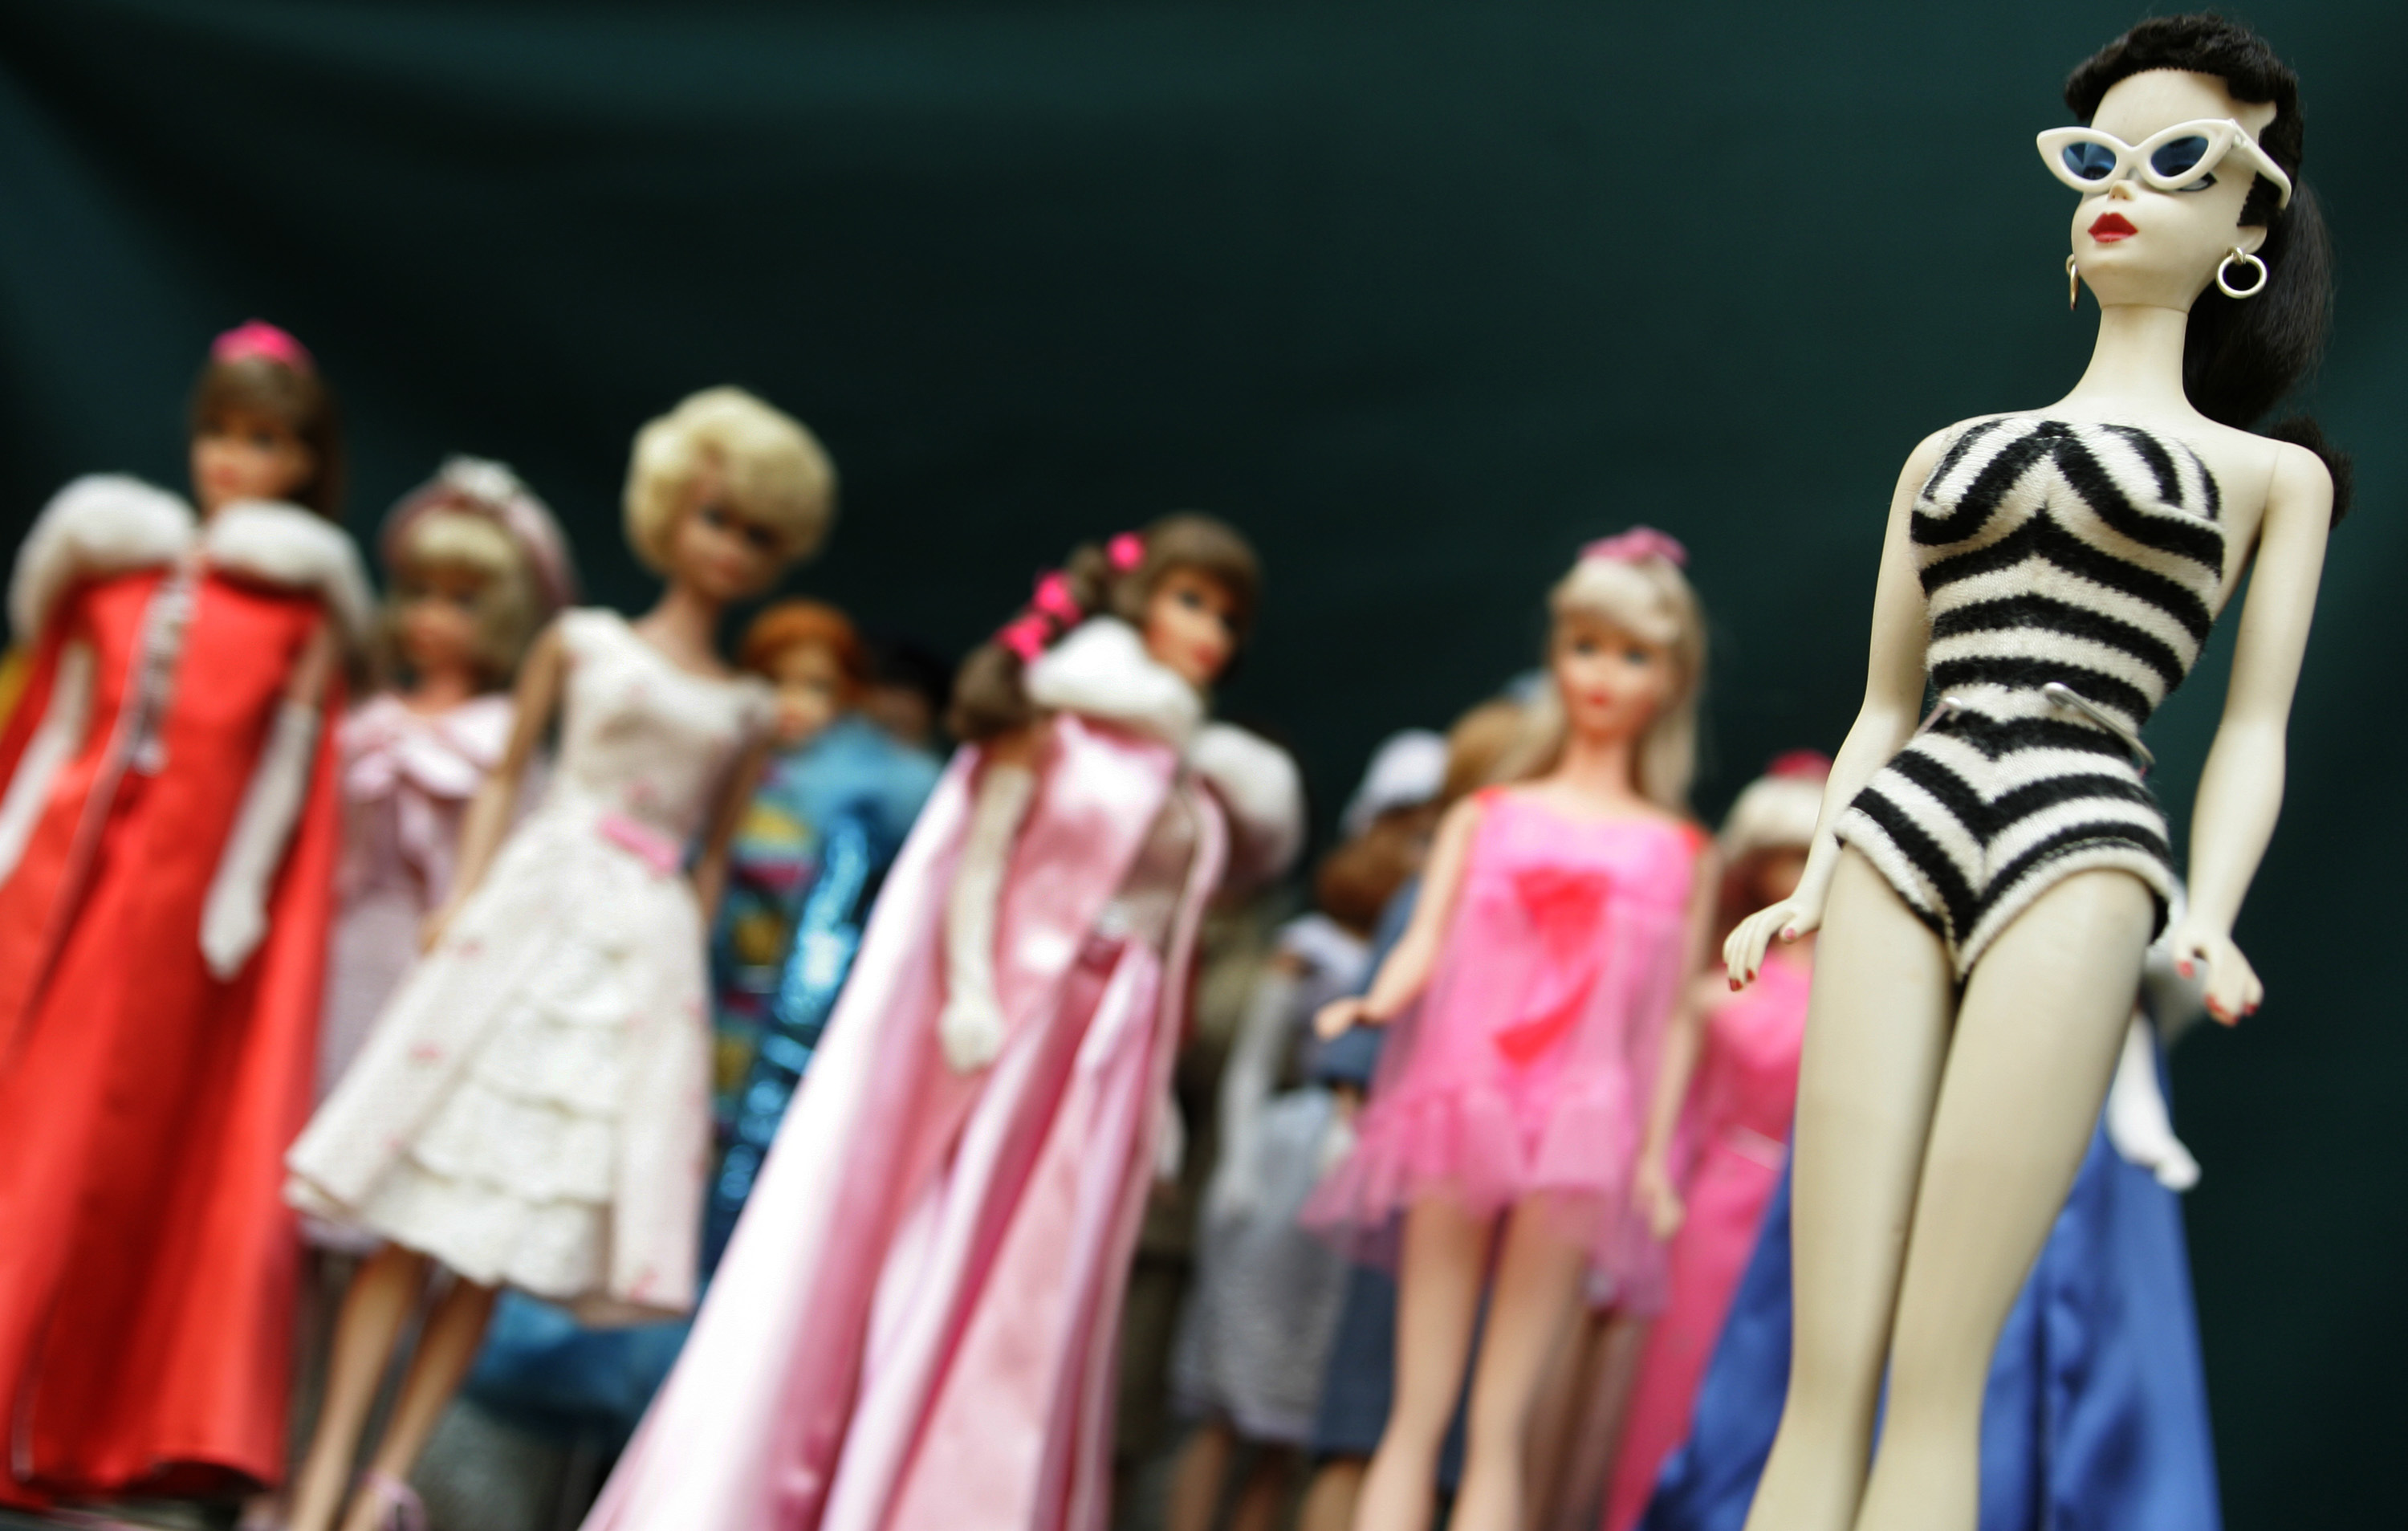 Es la última versión de la manía con el tema de Barbie, ya que la película se estrenará esta semana.